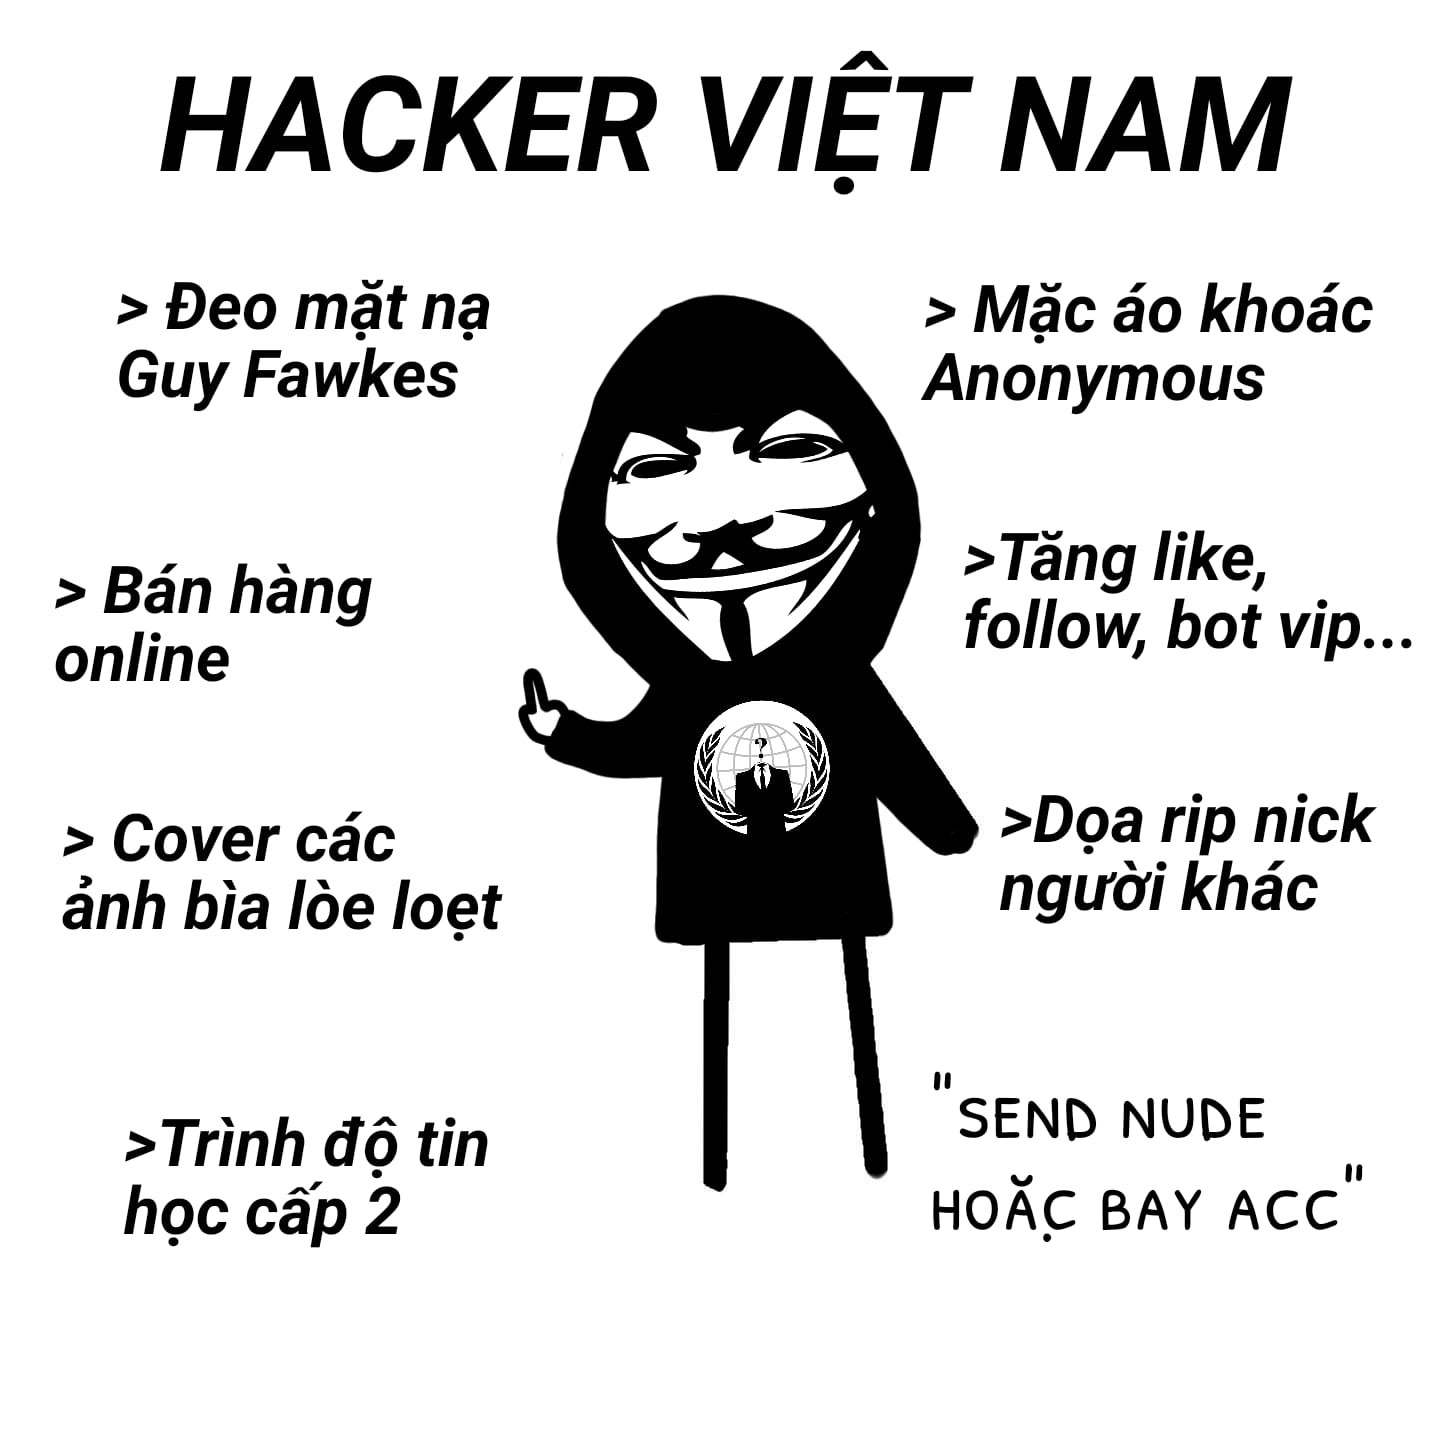 Toàn cảnh hacker Việt Nam